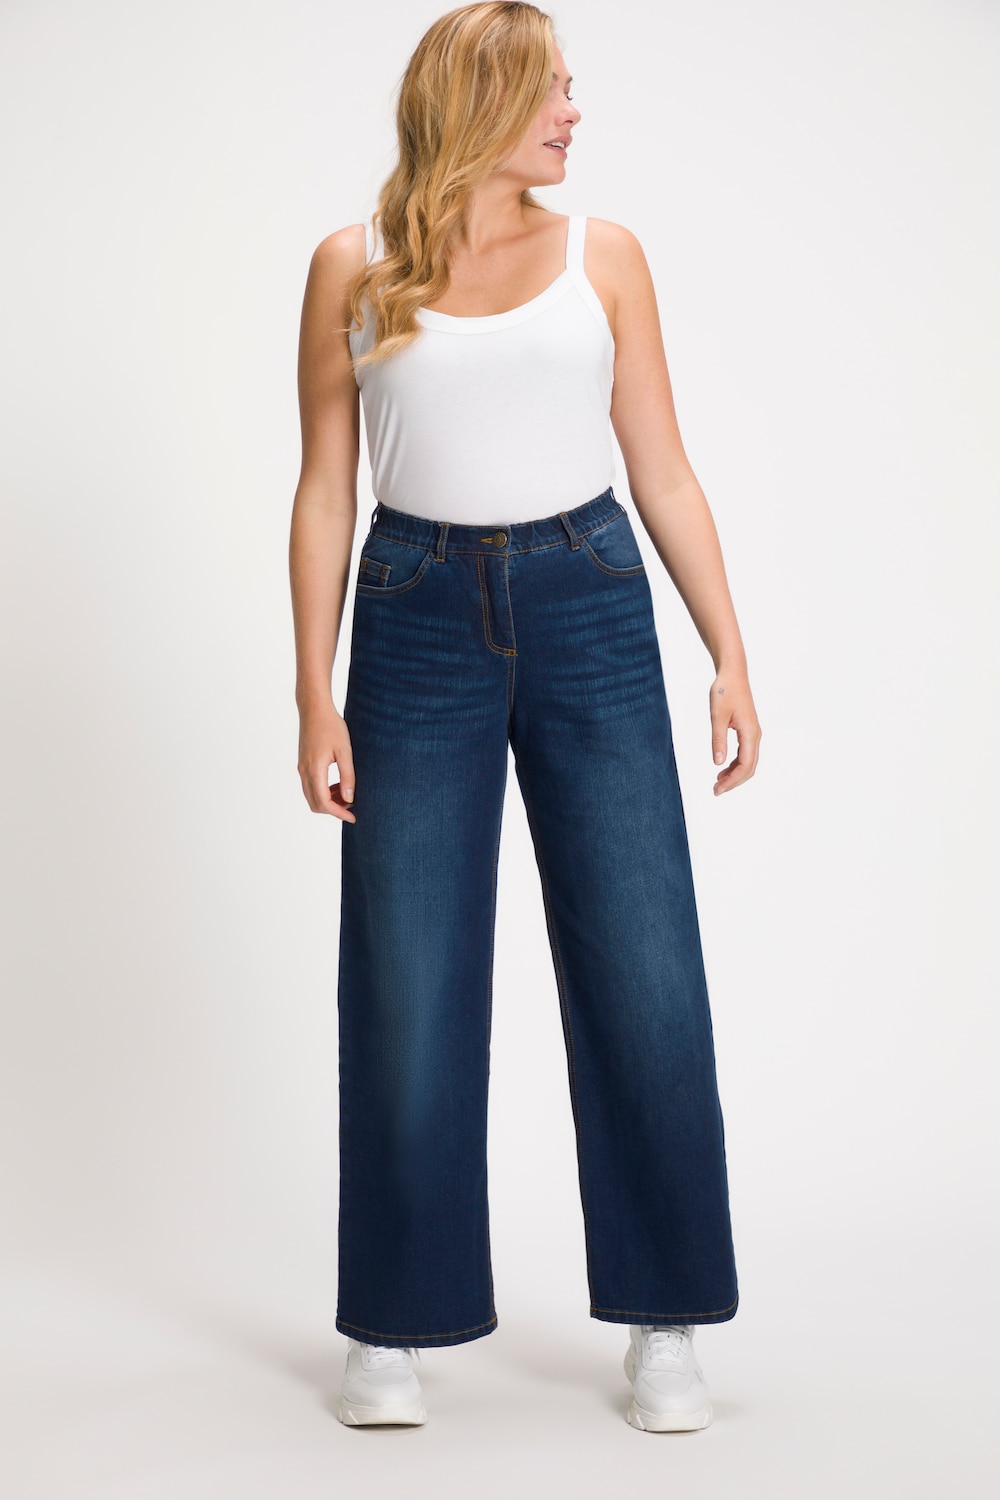 Grote Maten jeans Mary, Dames, blauw, Maat: 28, Katoen/Polyester/Viscose, Ulla Popken